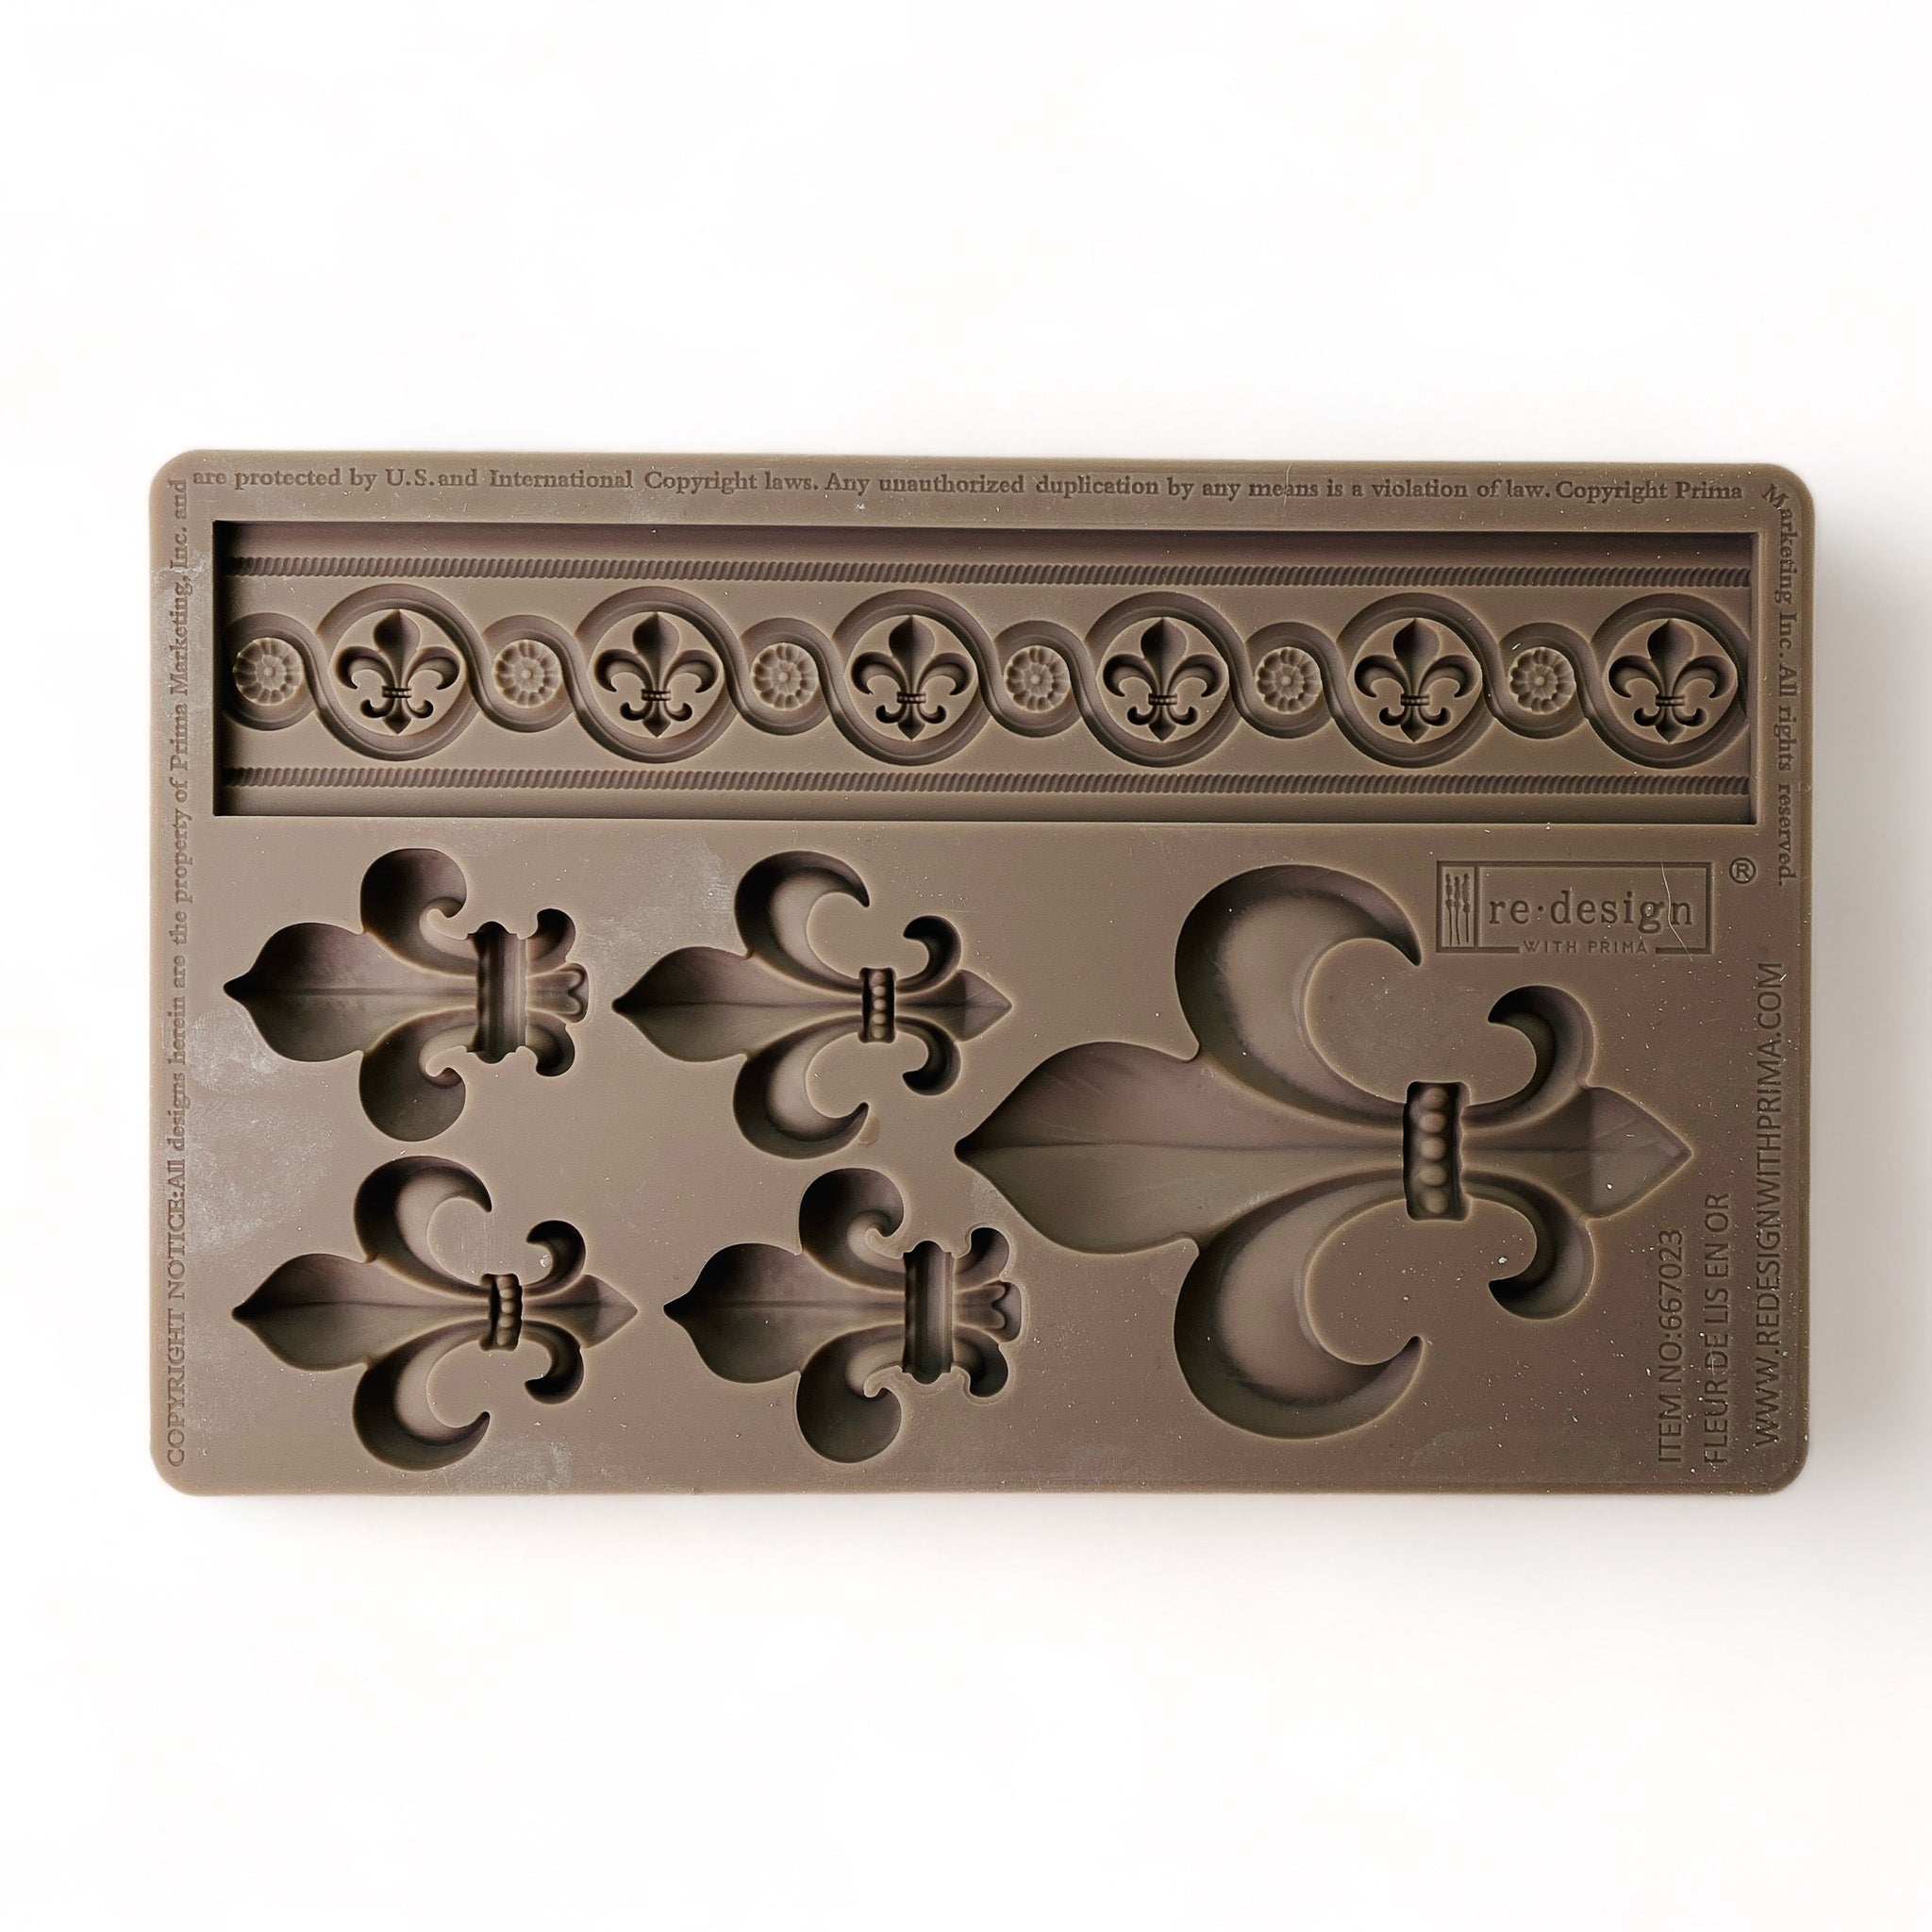 A brown silicone mould that features 5 fleur de lis and a fleur de lis border design is against a white background.